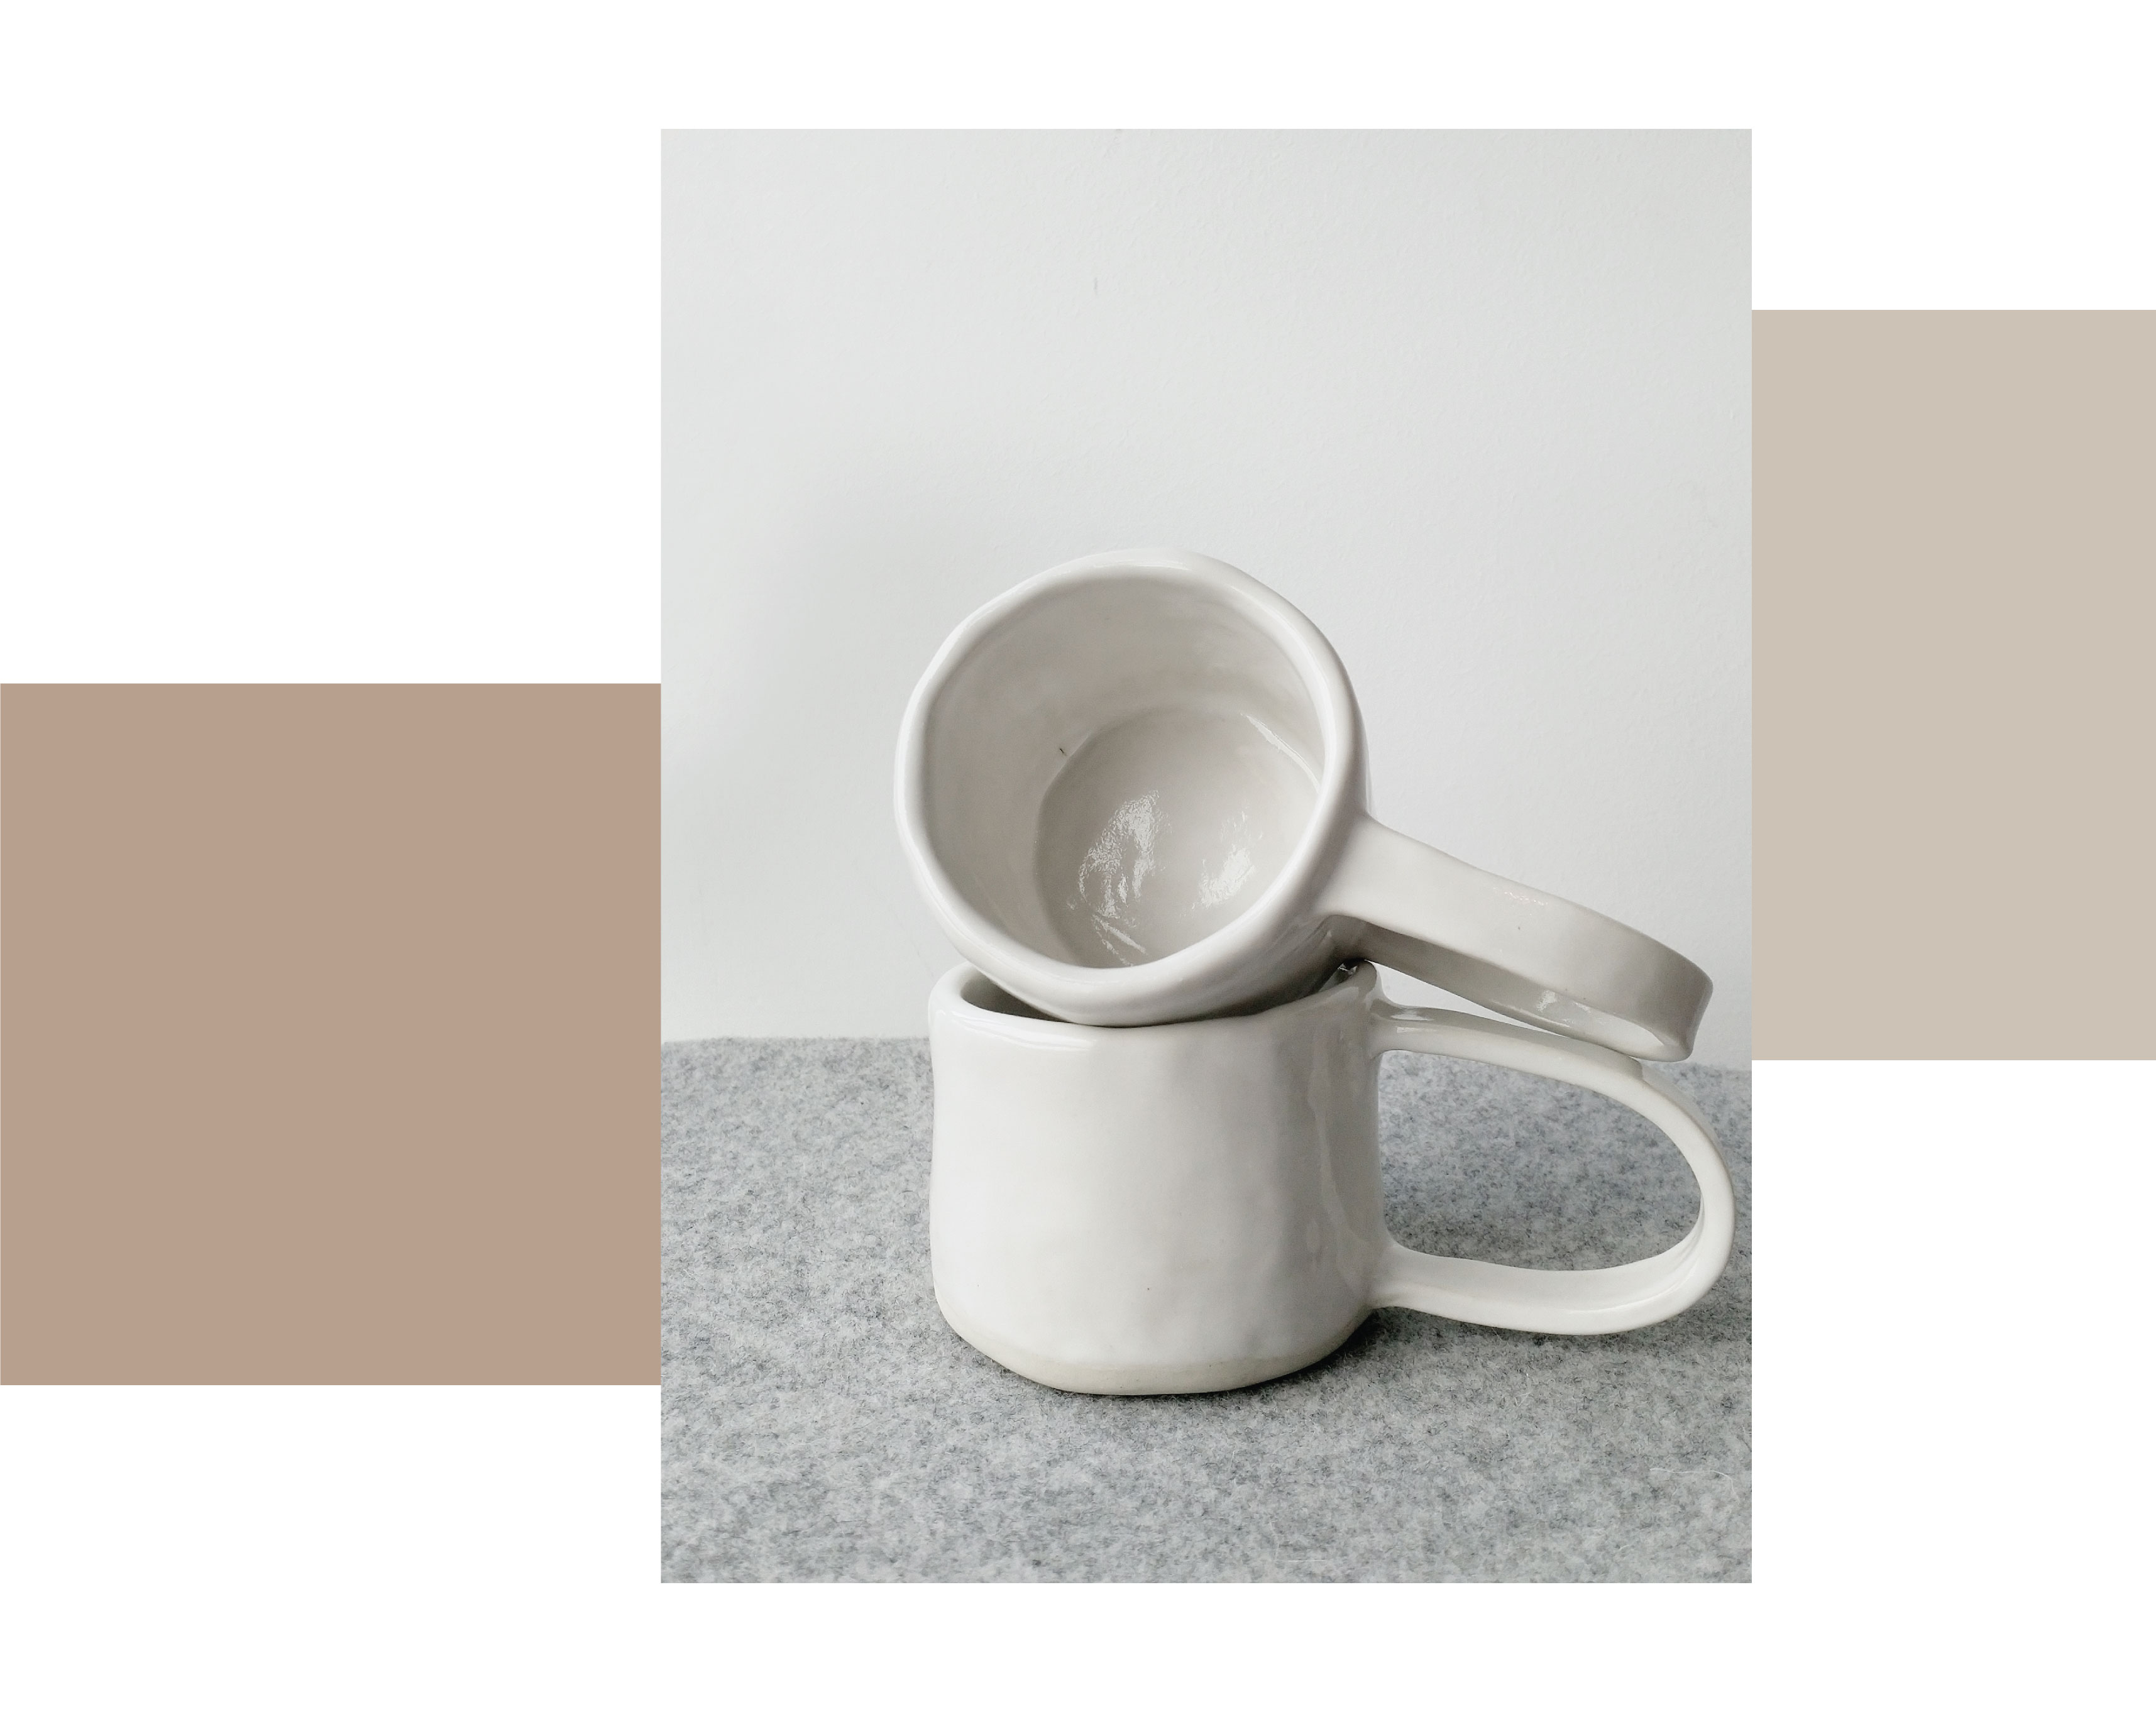  Deux tasses en grès blanc, fabriquées à la main et en dalle, sur fond gris.